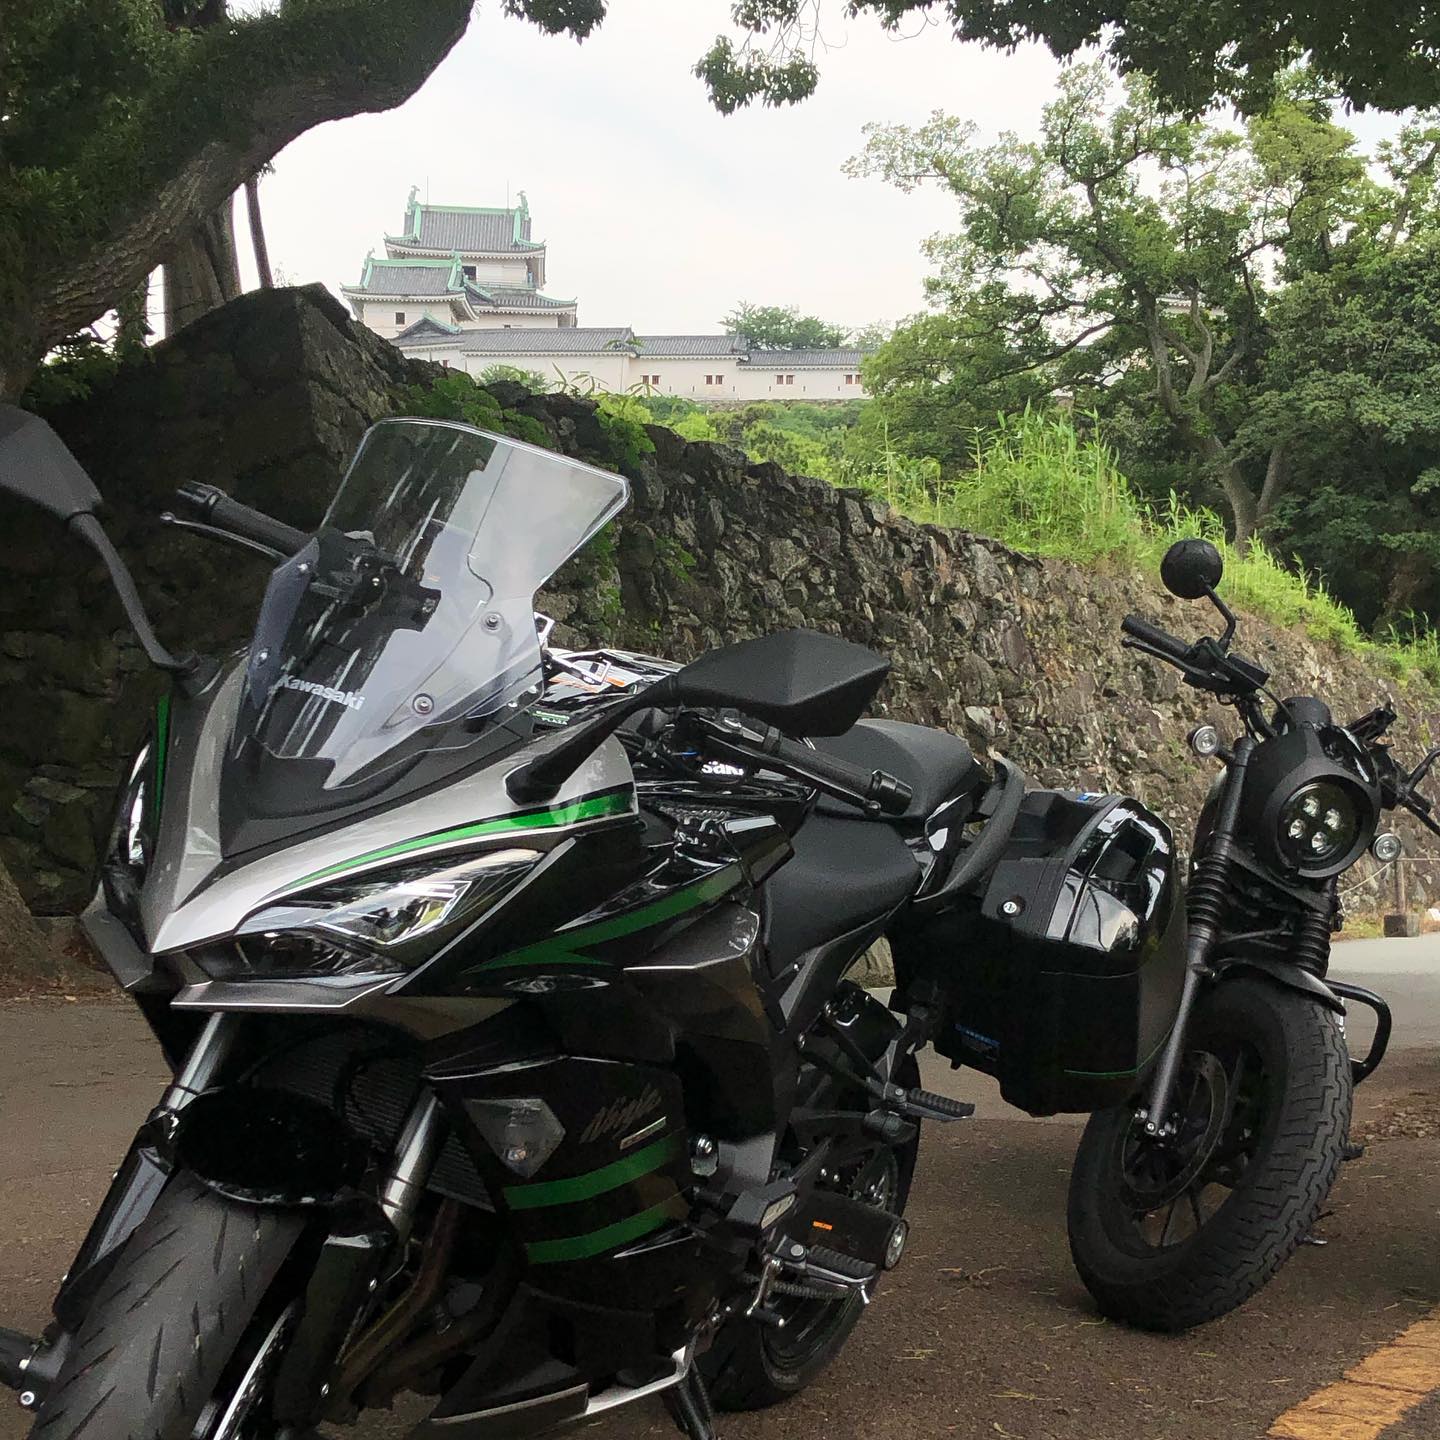 高野山から和歌山城まで移動しましたバイクの無料駐車場があるとネットで見たのですが分からなくて近くの人に教えてもらいました思ってたよりも自転車と原付が多くてninja1000sxが止めれなかったので写真だけささっと撮りました今度は嫁のレブルも一緒に撮影です#ninja1000sx #ninja1000 #レブル250 #和歌山城 #ツーリング